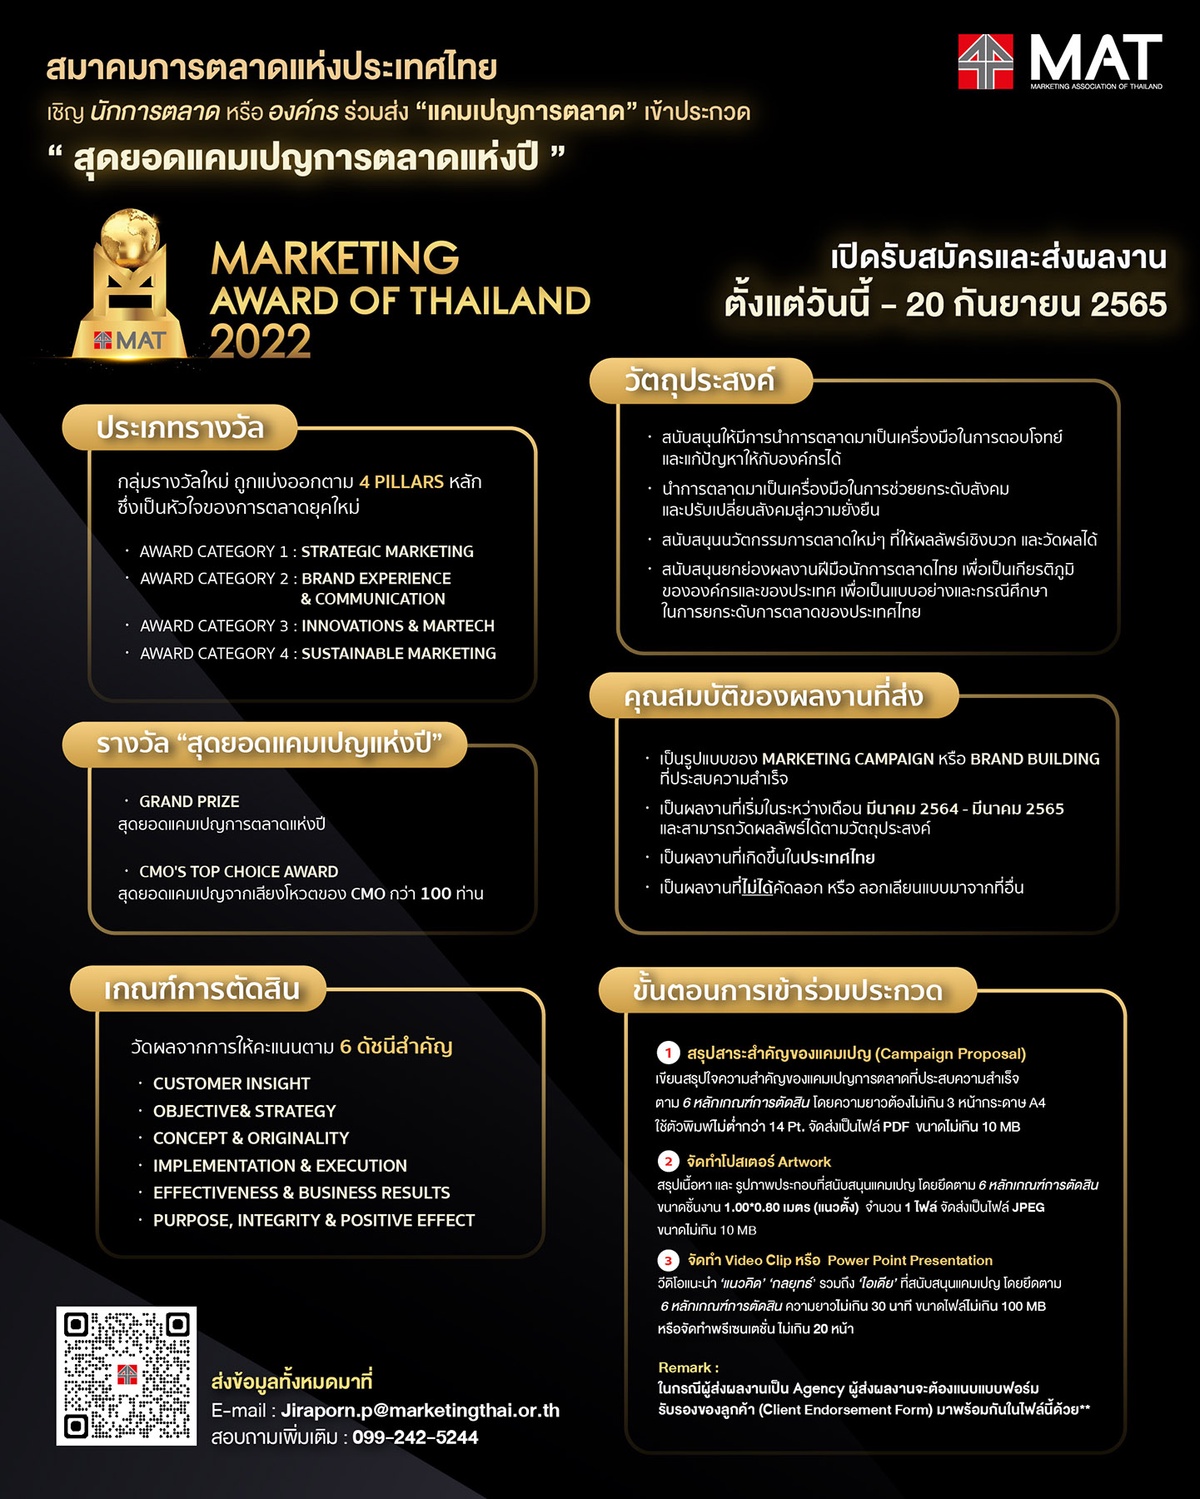 สมาคมการตลาด จัดประกวด Marketing Award of Thailand เฟ้นหาสุดยอดแคมเปญการตลาดแห่งปี รับสมัครถึง 20 ก.ย.นี้